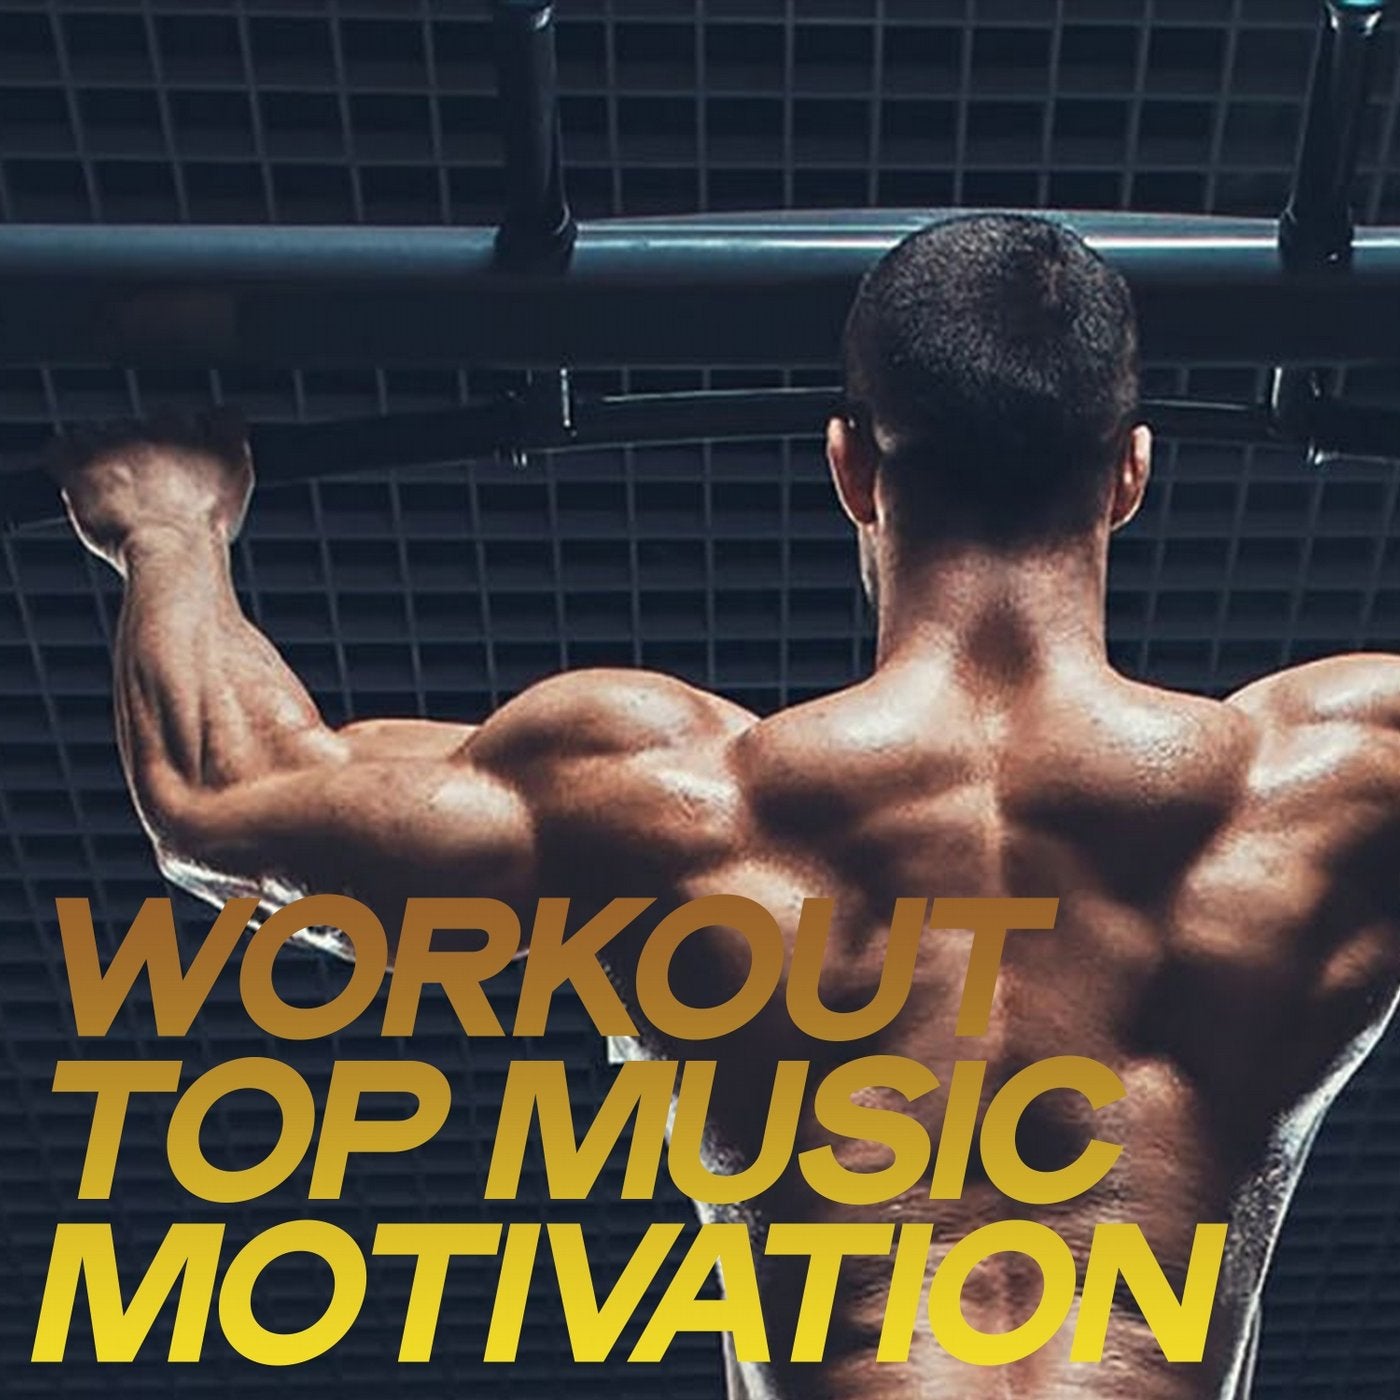 Слушать музыку для тренировок мотивация мужчин. Альбомы Workout Motivation. Workouts альбом для музыки. Воркаут на аву. Музыка для мотивации.